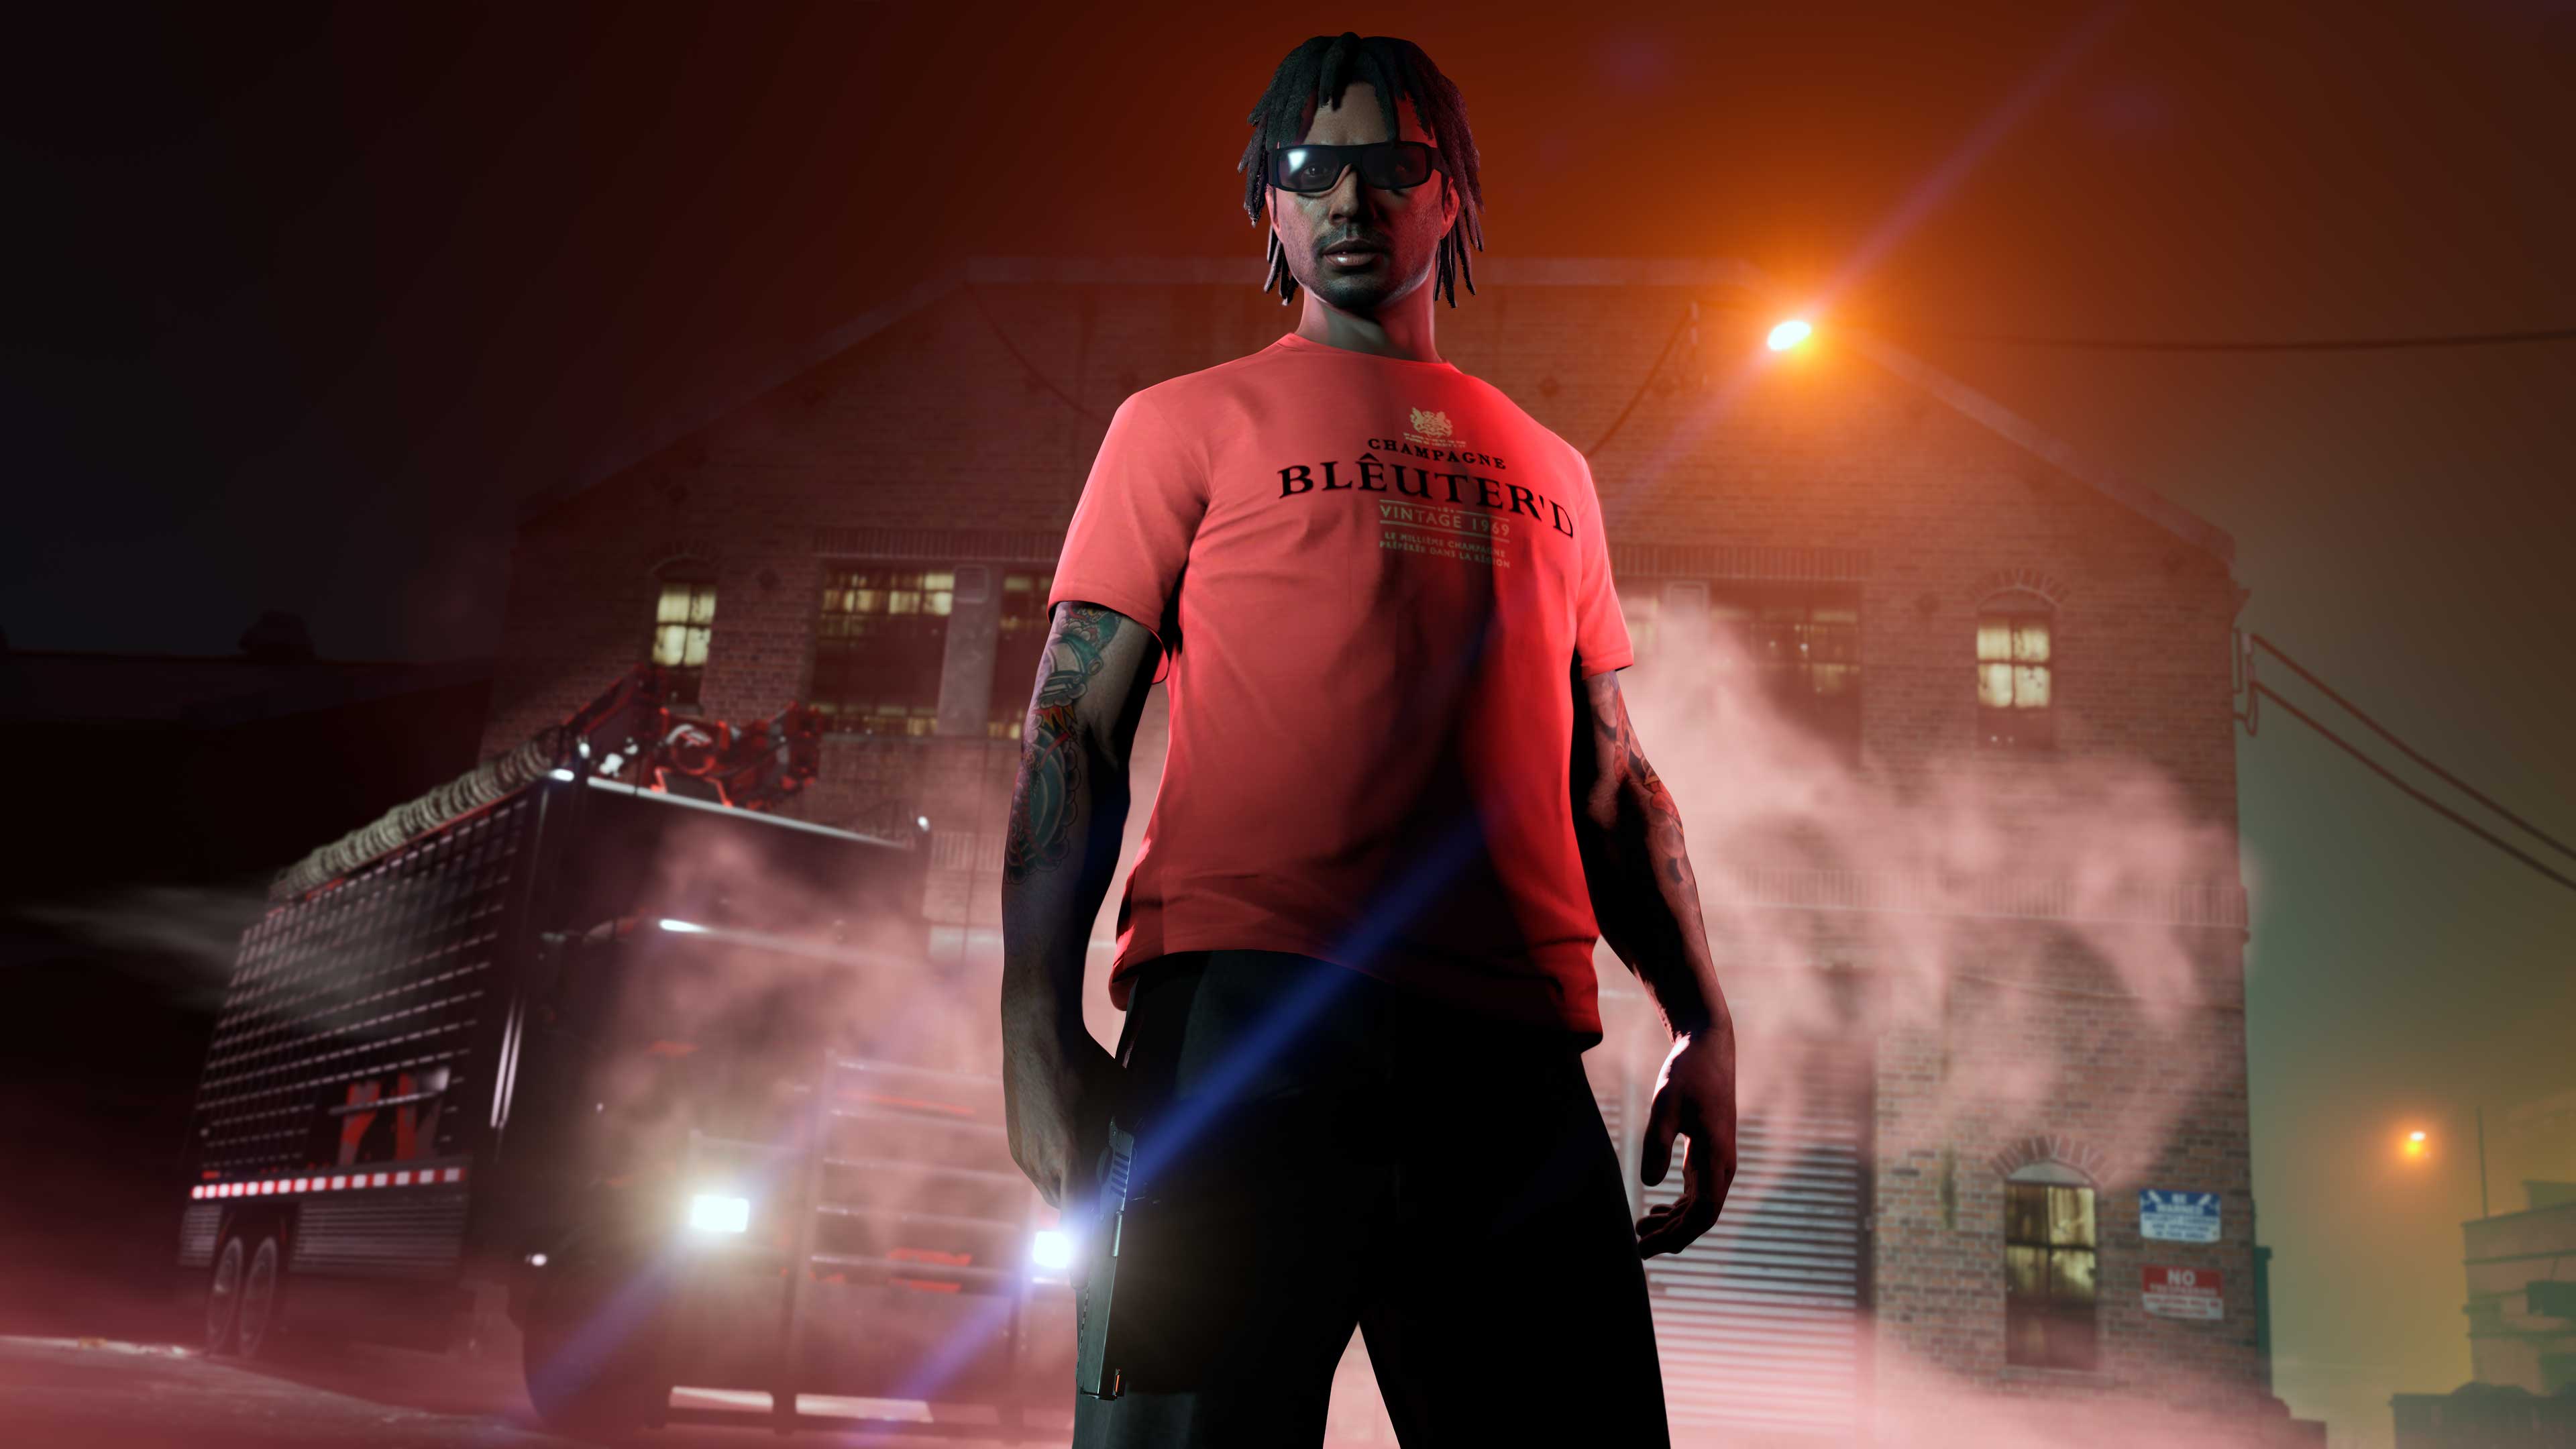 Jogador do Grand Theft Auto Online usando uma camiseta Blêuter’d vermelha.